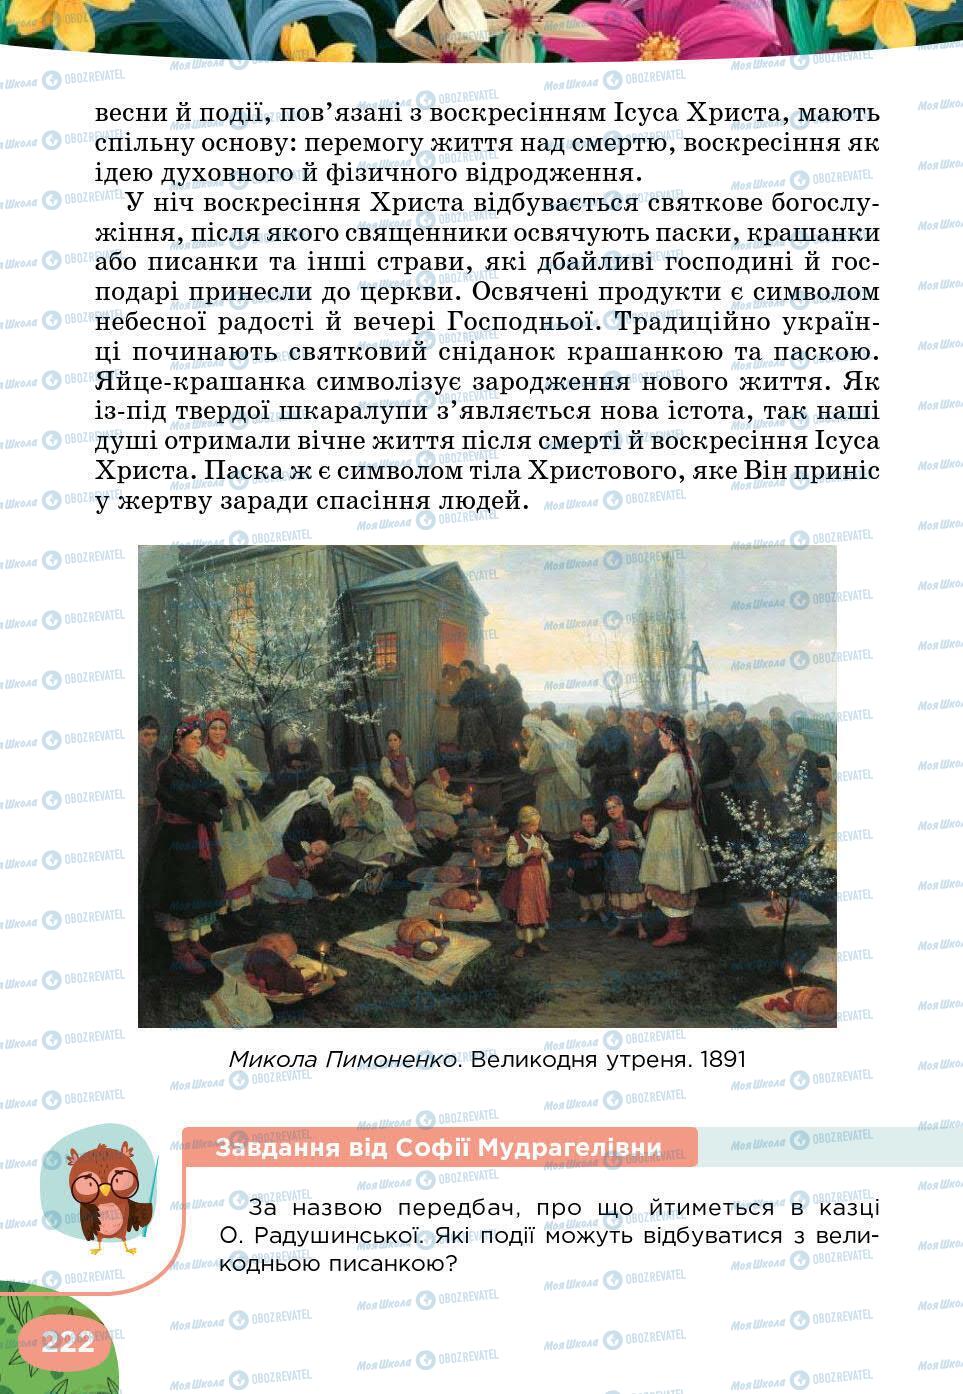 Підручники Українська література 5 клас сторінка 222